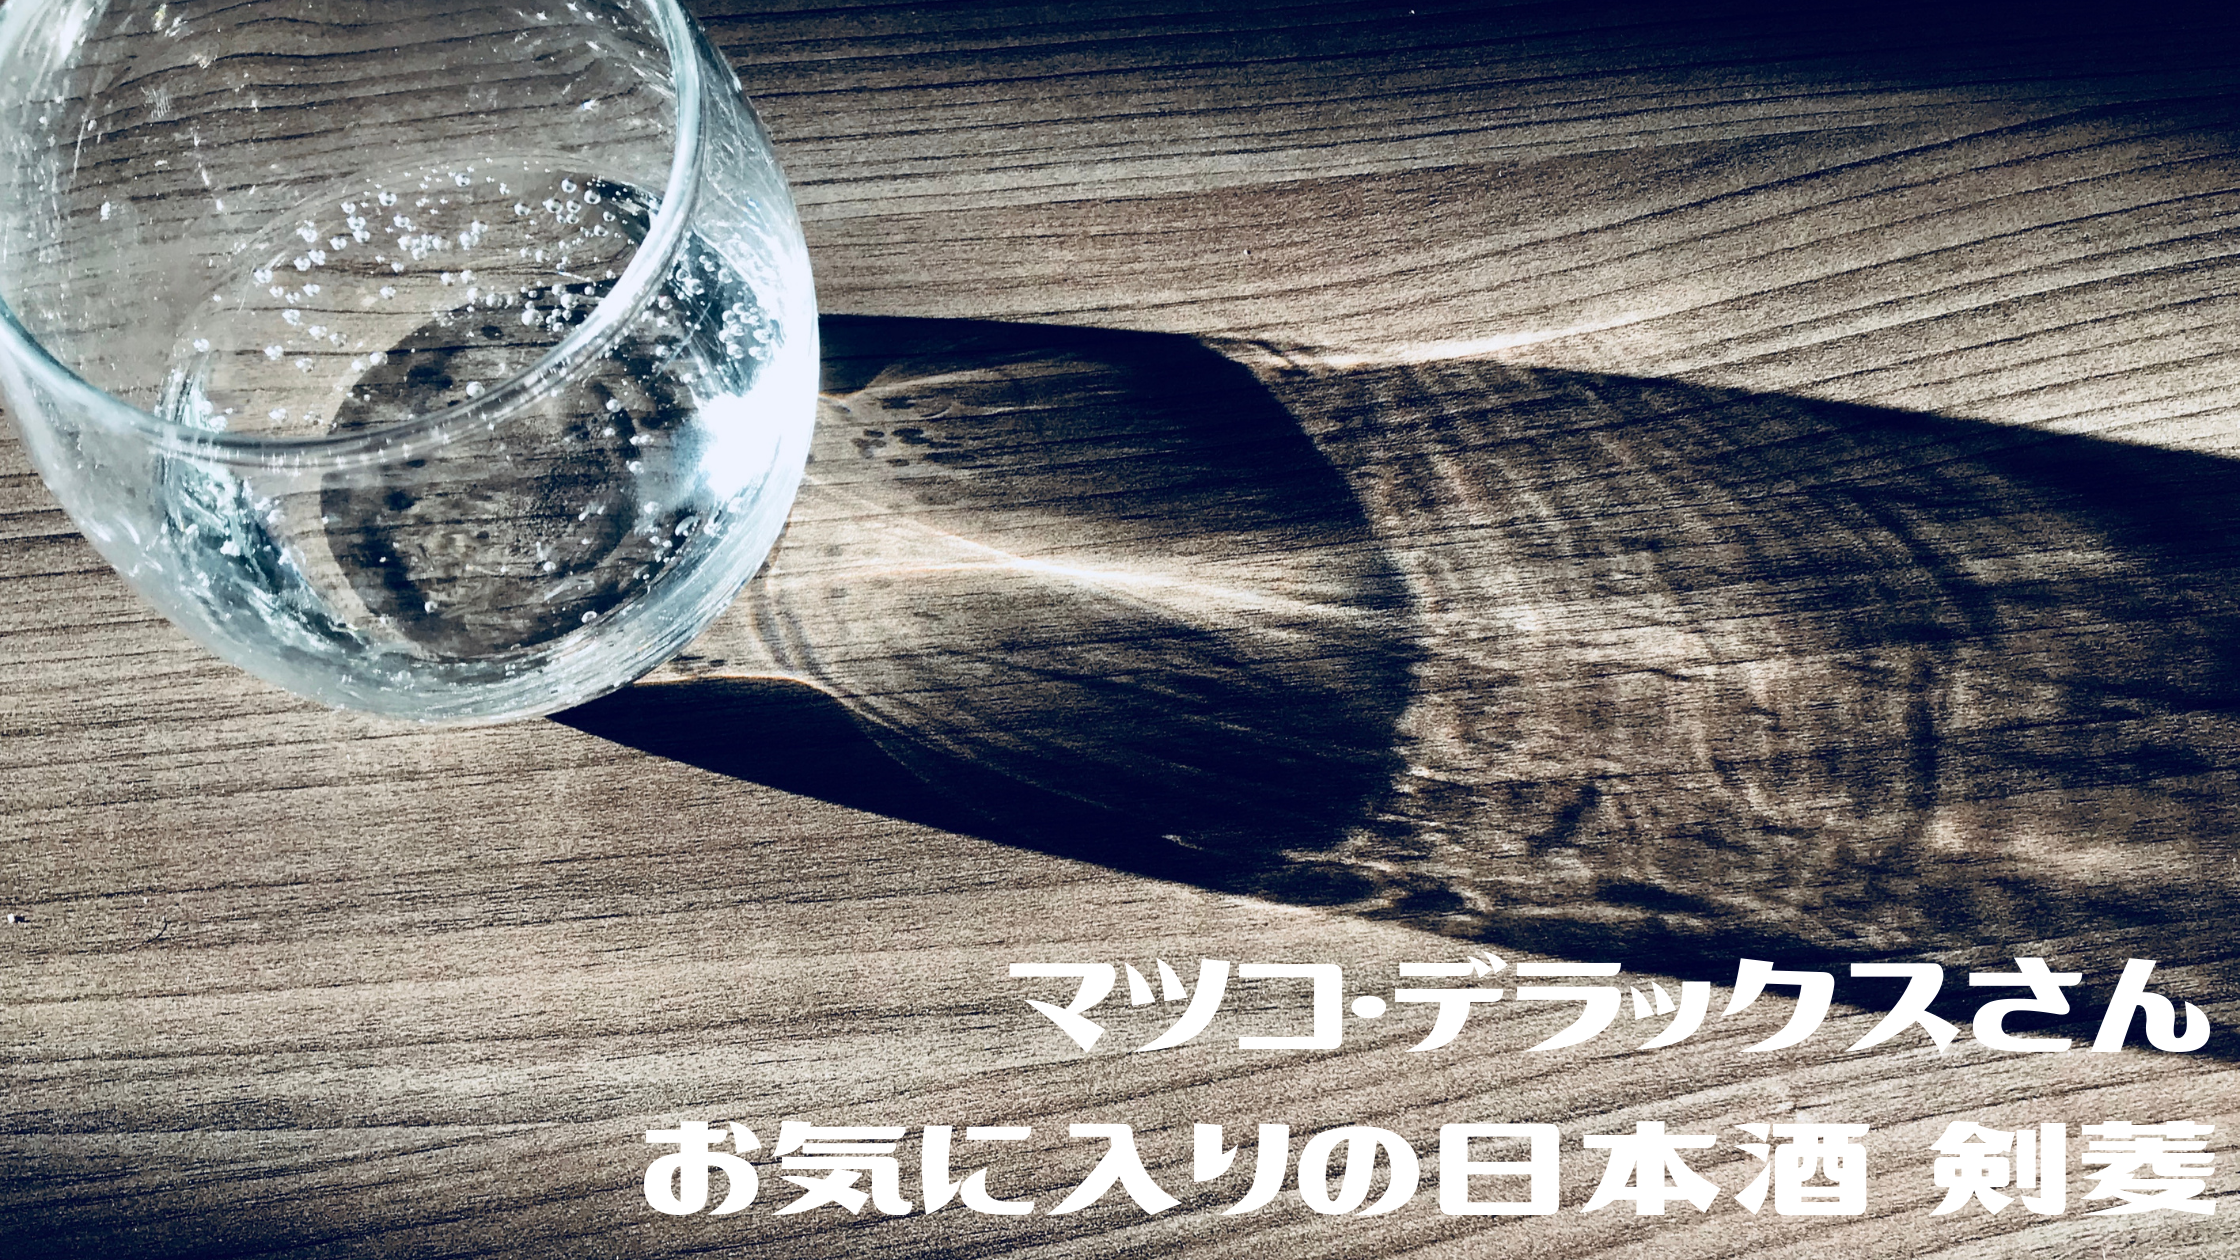 【おしゃれイズム】マツコ・デラックスさんおもてなし【日本酒 剣菱】